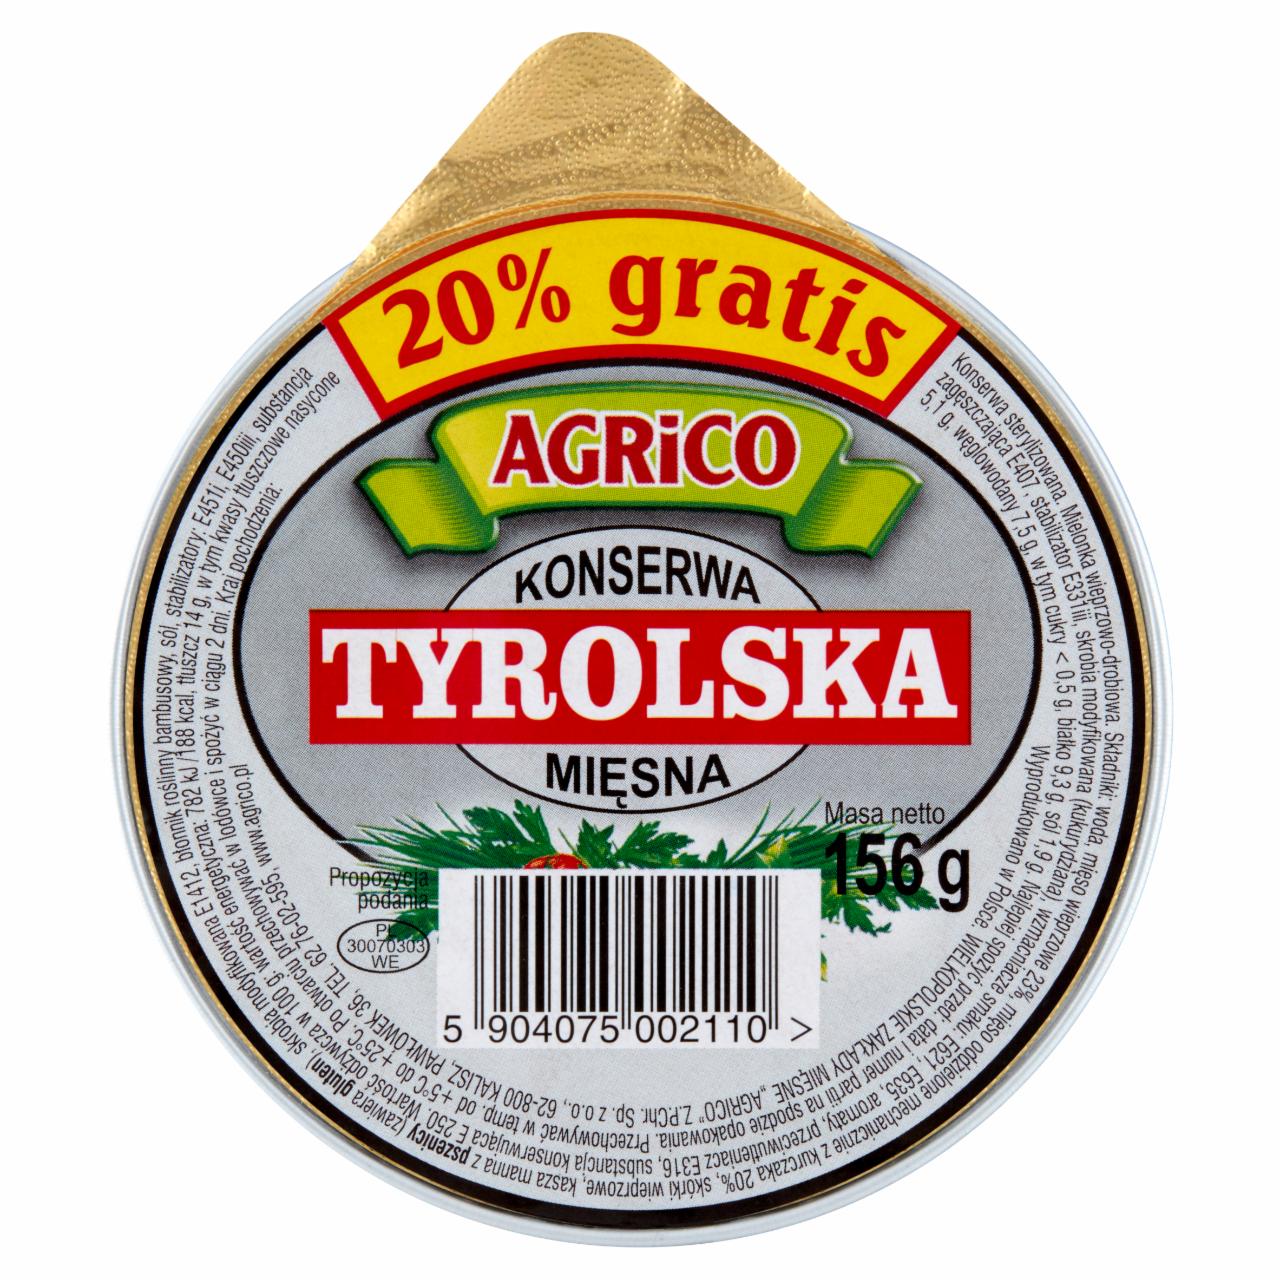 Zdjęcia - Agrico Konserwa mięsna tyrolska 156 g